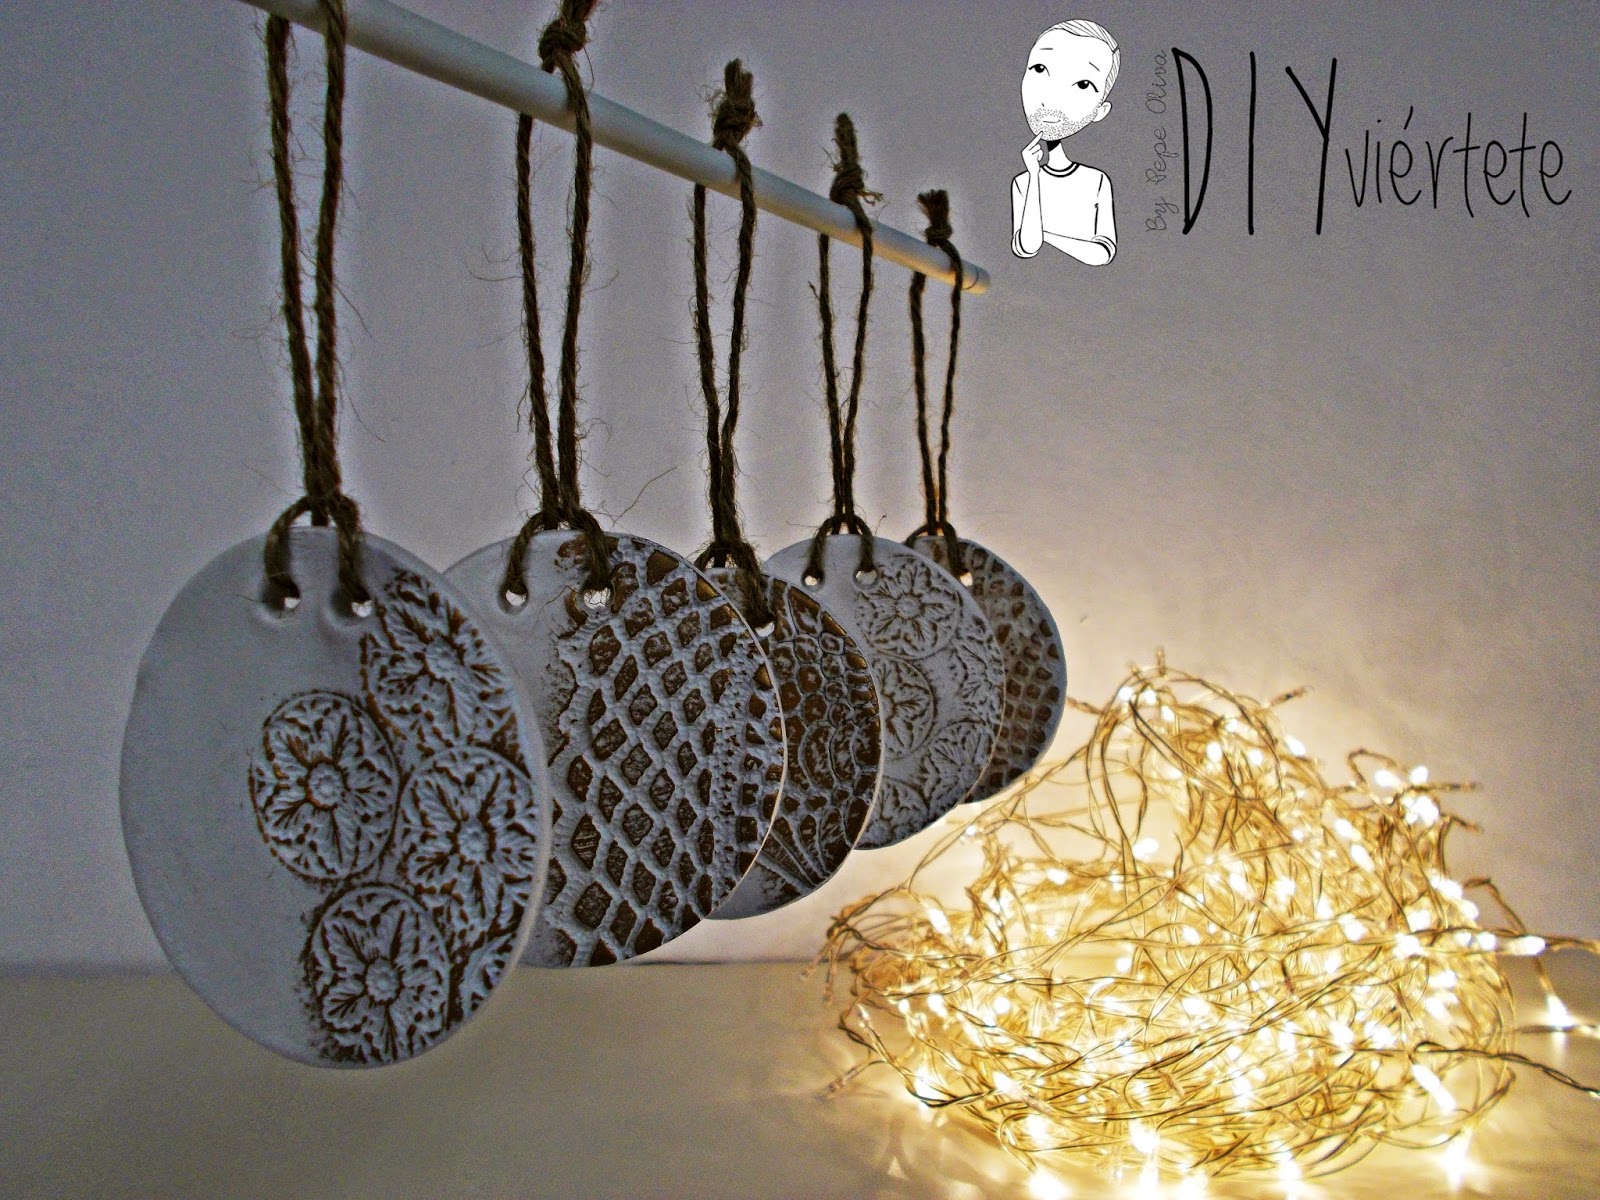 DIY-adorno navideño-ideas decoración-pasta de modelar-porcelana fria-fimo-arcilla polimérica-encaje-dorado-Navidad 3